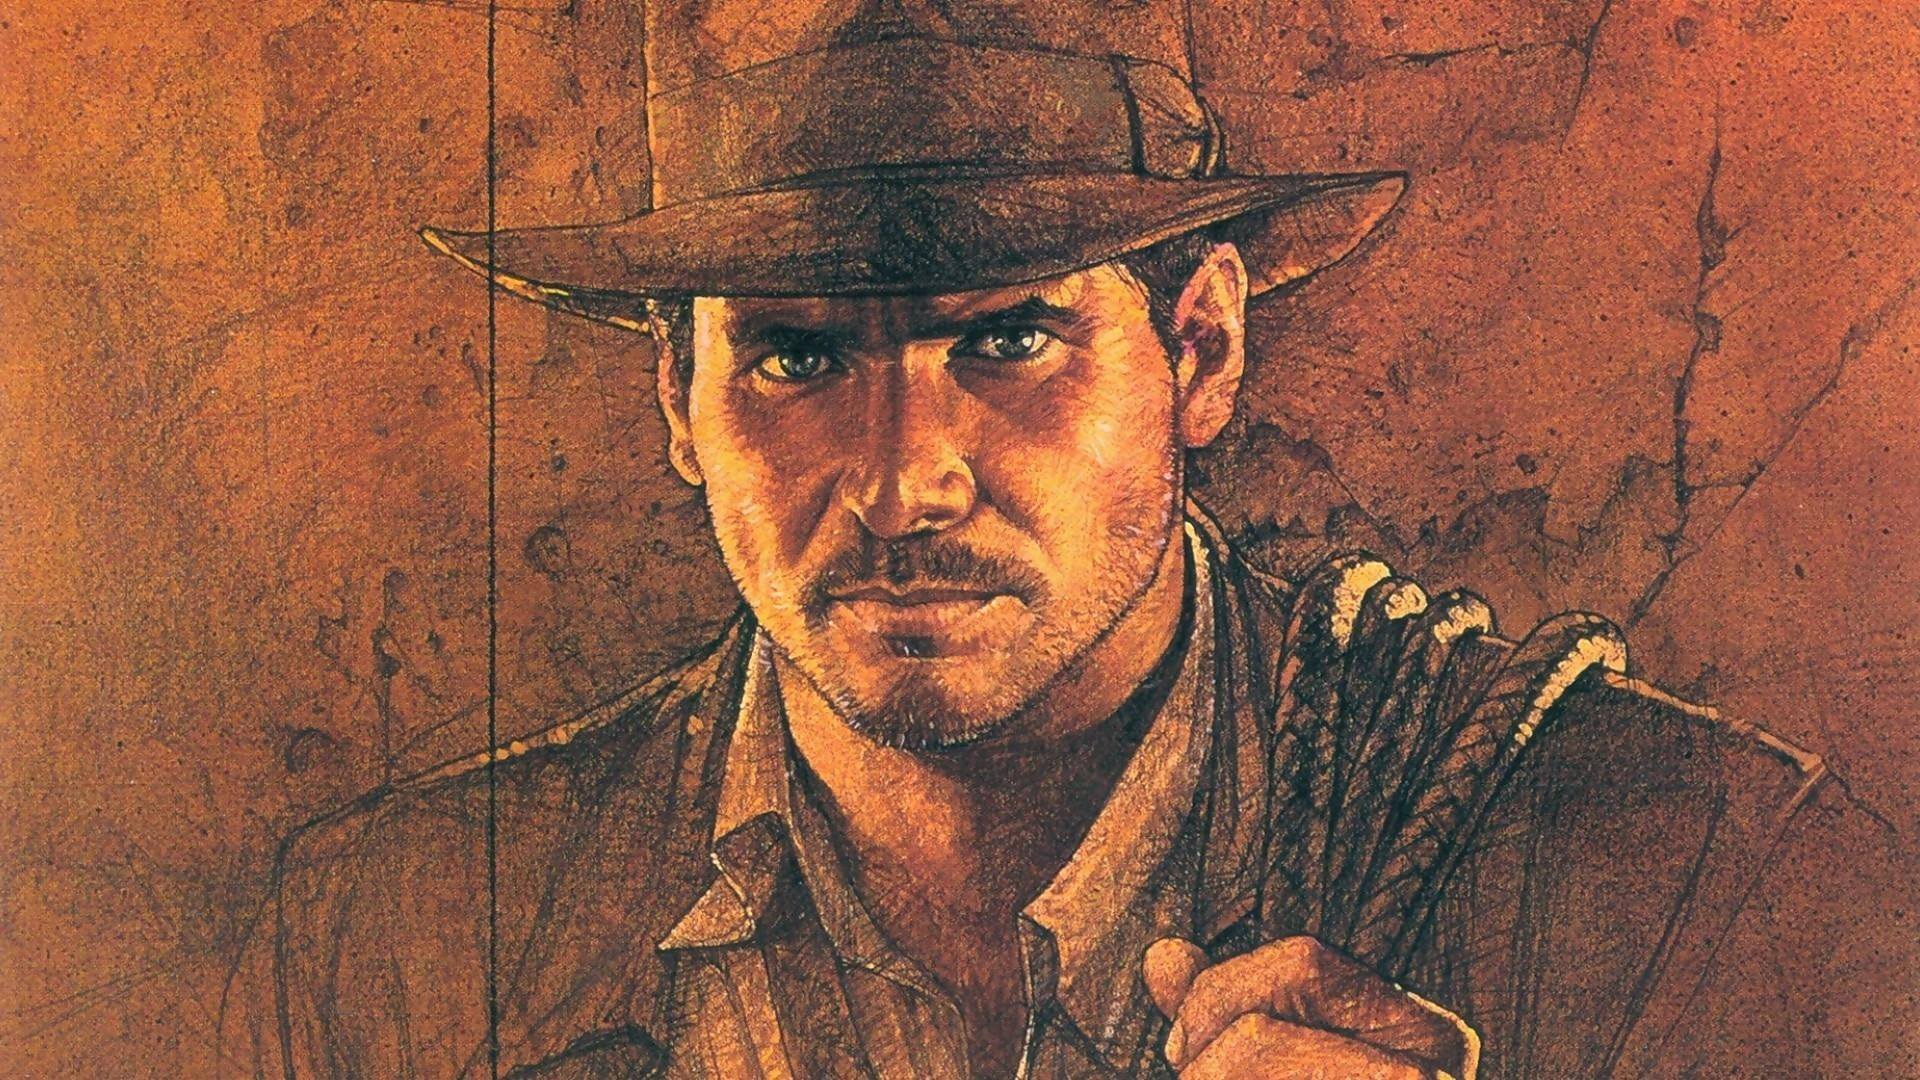 Indiana Jones rumeurs